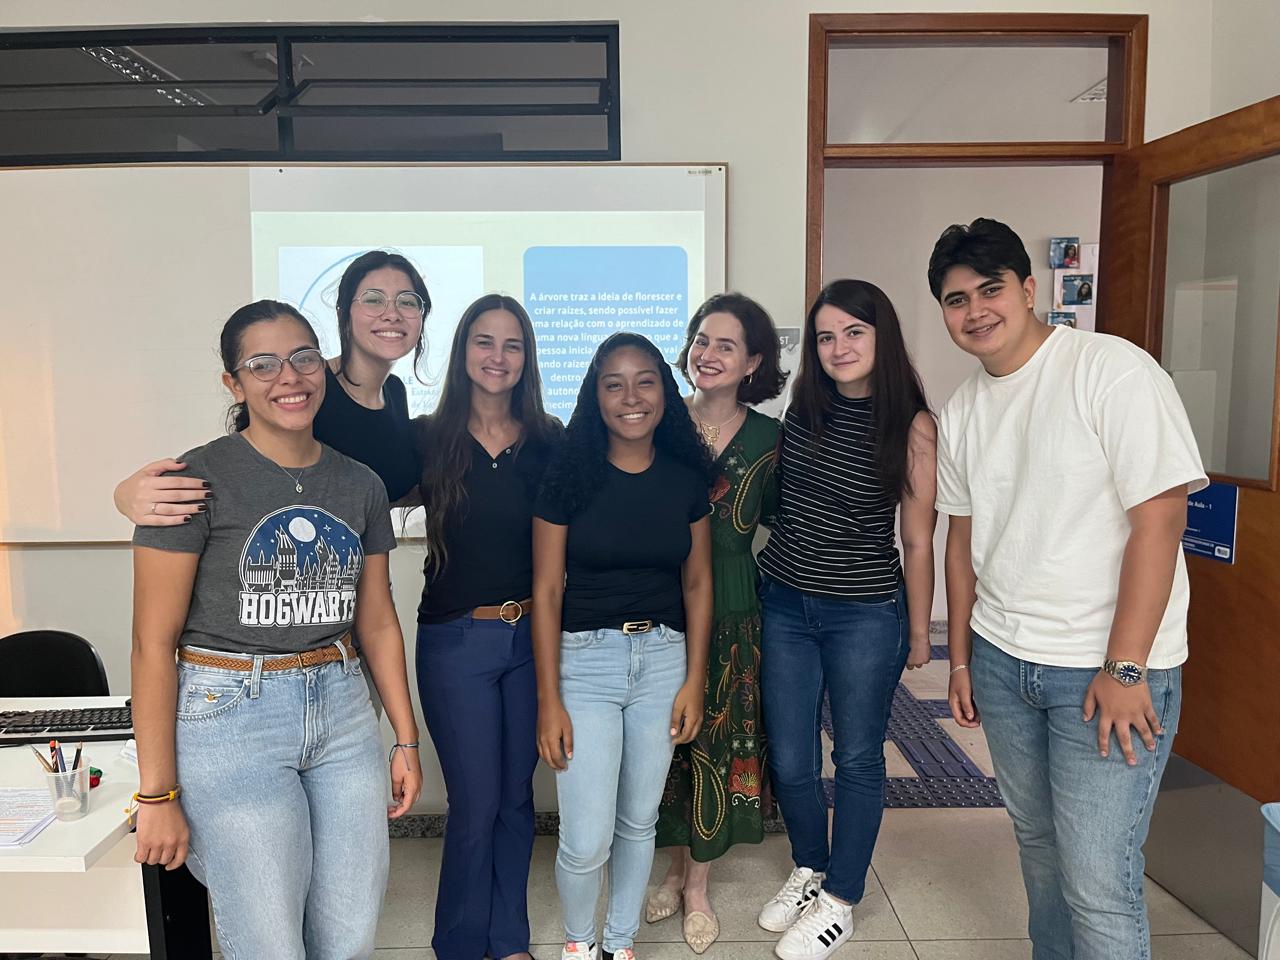 Estudantes estrangeiros iniciam curso de Português na UFLA, no âmbito do Programa de cooperação internacional PEC-PLE